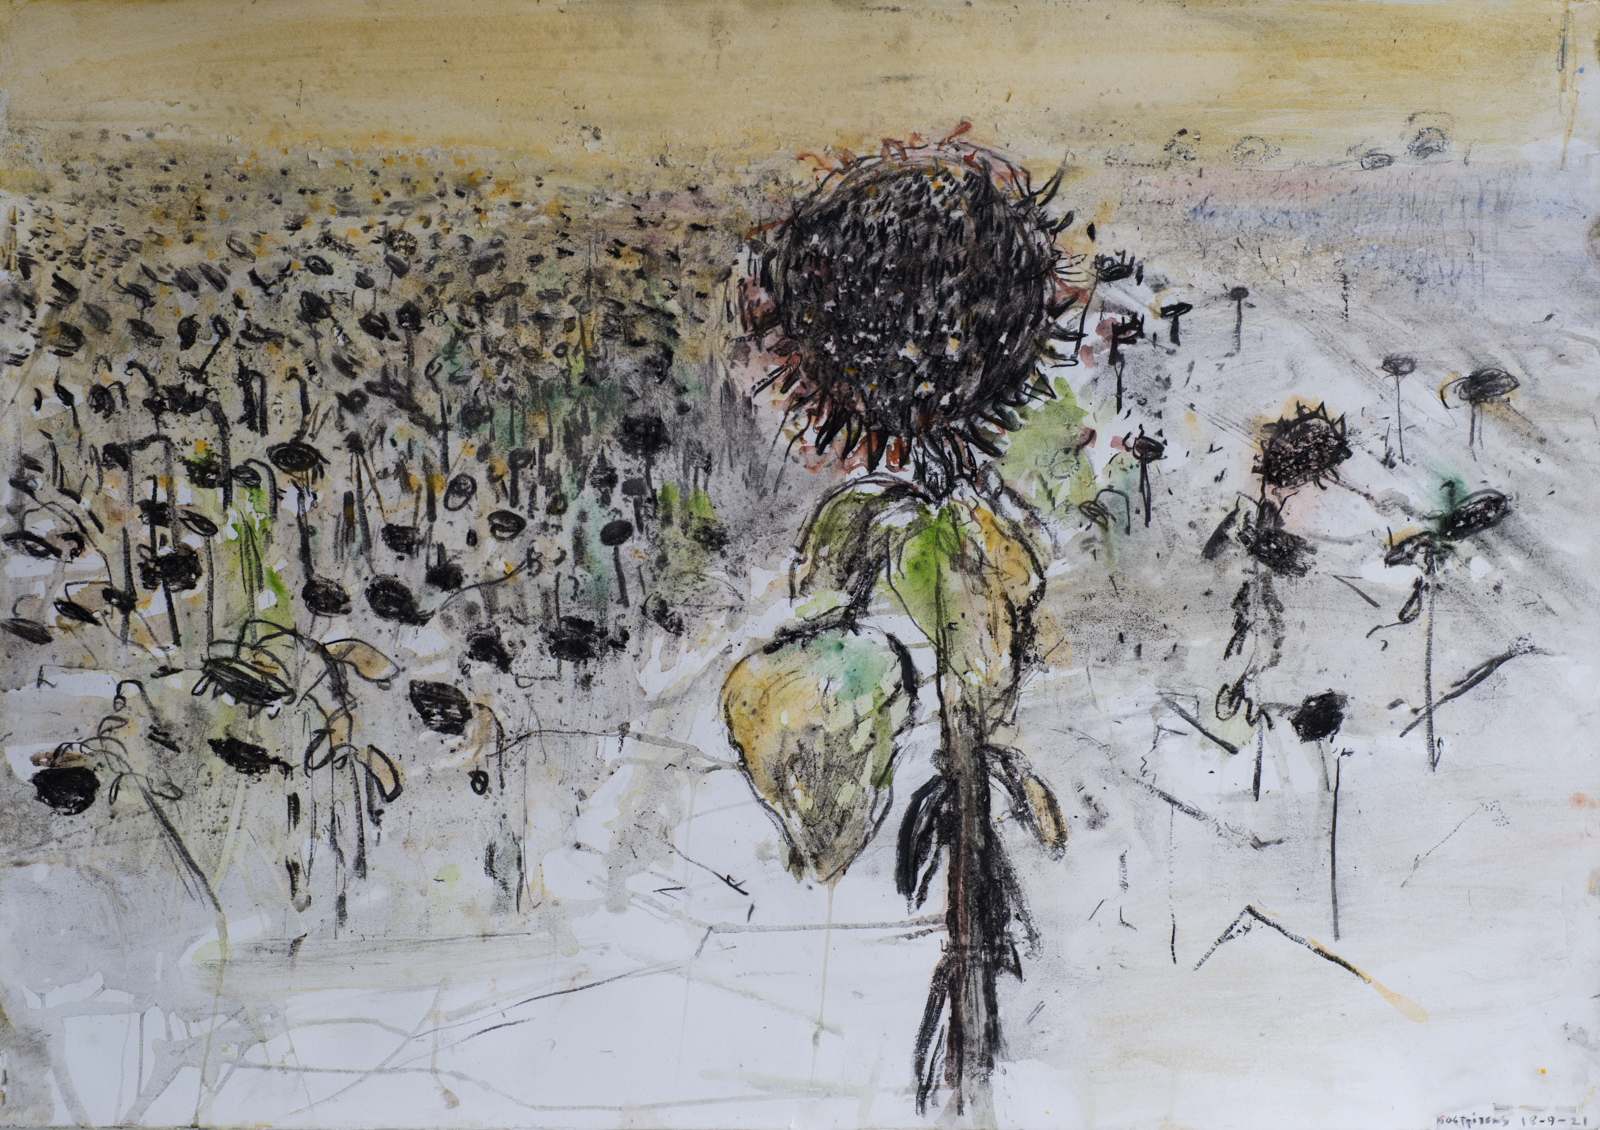 Πίσω στα Χωράφια: Έκθεση του Γιάννη Καστρίτση στην αίθουσα τέχνης έκφραση-γιάννα γραμματοπούλου